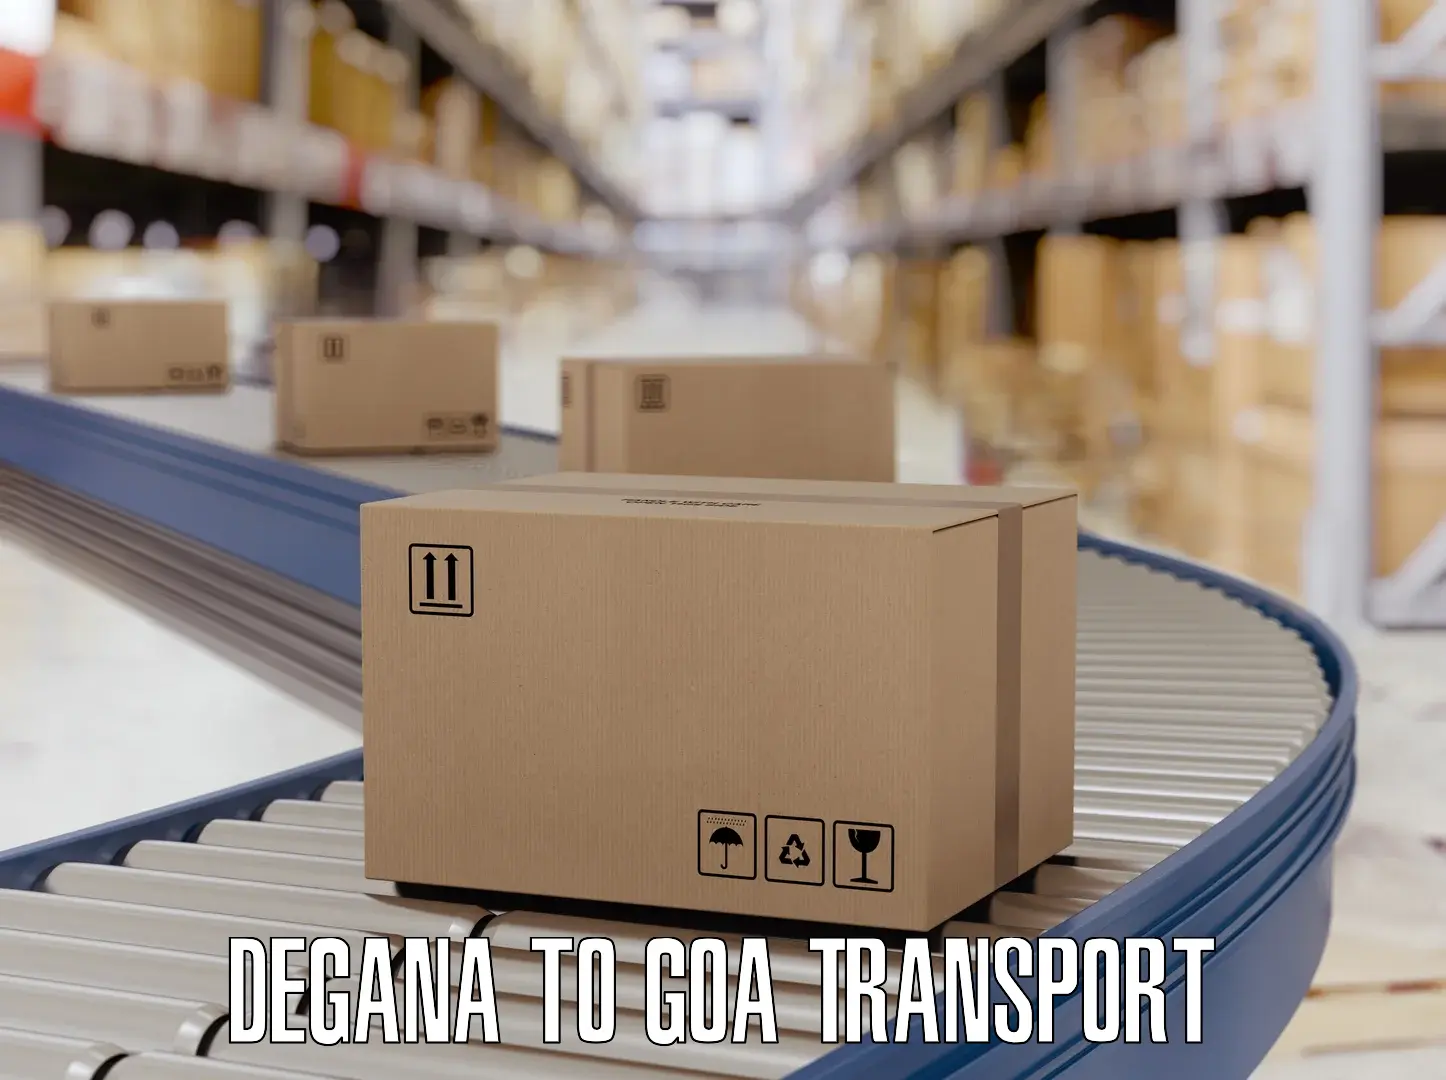 Daily transport service Degana to Canacona